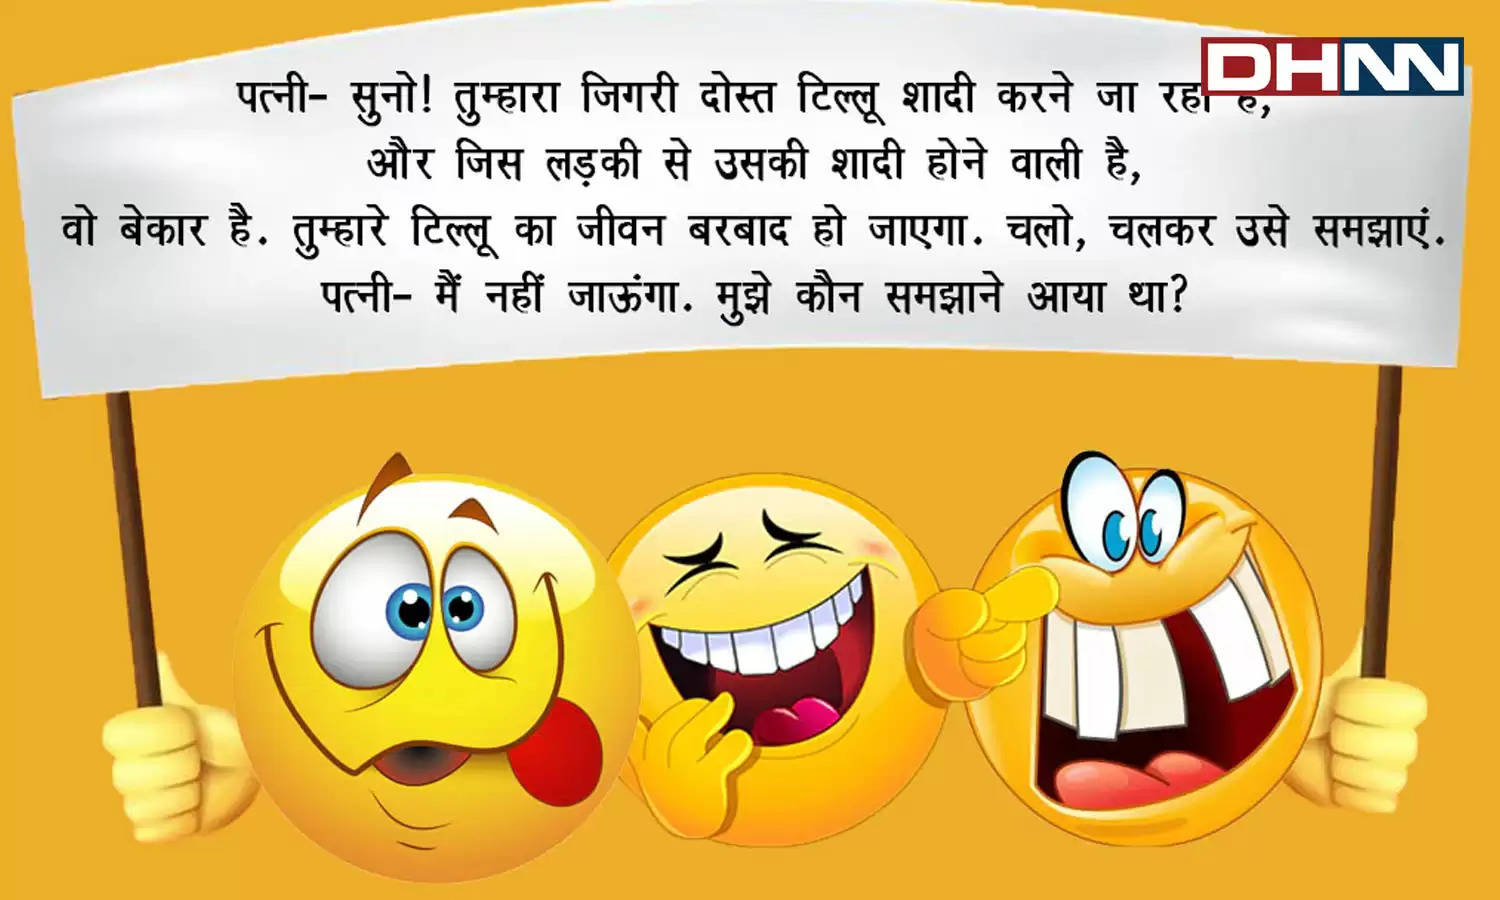 Hindi Jokes: पति- पत्नी के बीच बहस हुई और नौबत मारपीट तक आ पहुंची।